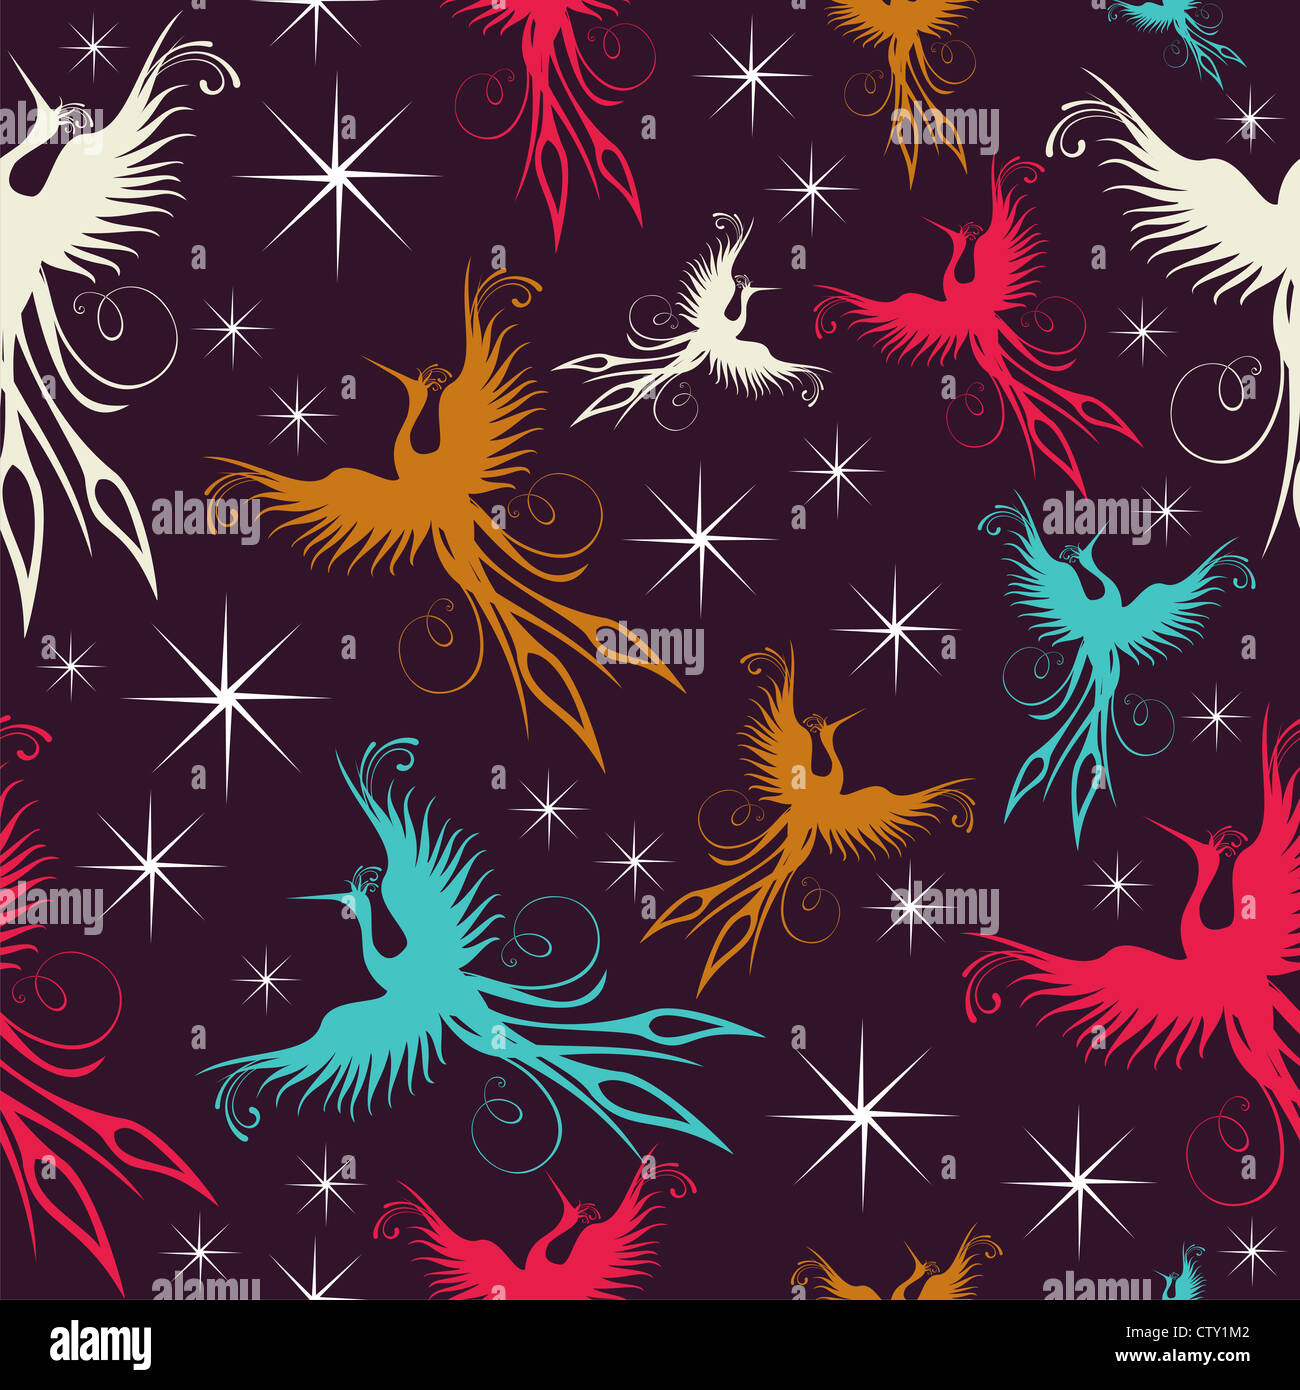 Mehrfarbige Phoenix Vögel Musterdesign Hintergrund. Vektor-Datei geschichtet für einfache Handhabung und Anpassung. Stockfoto